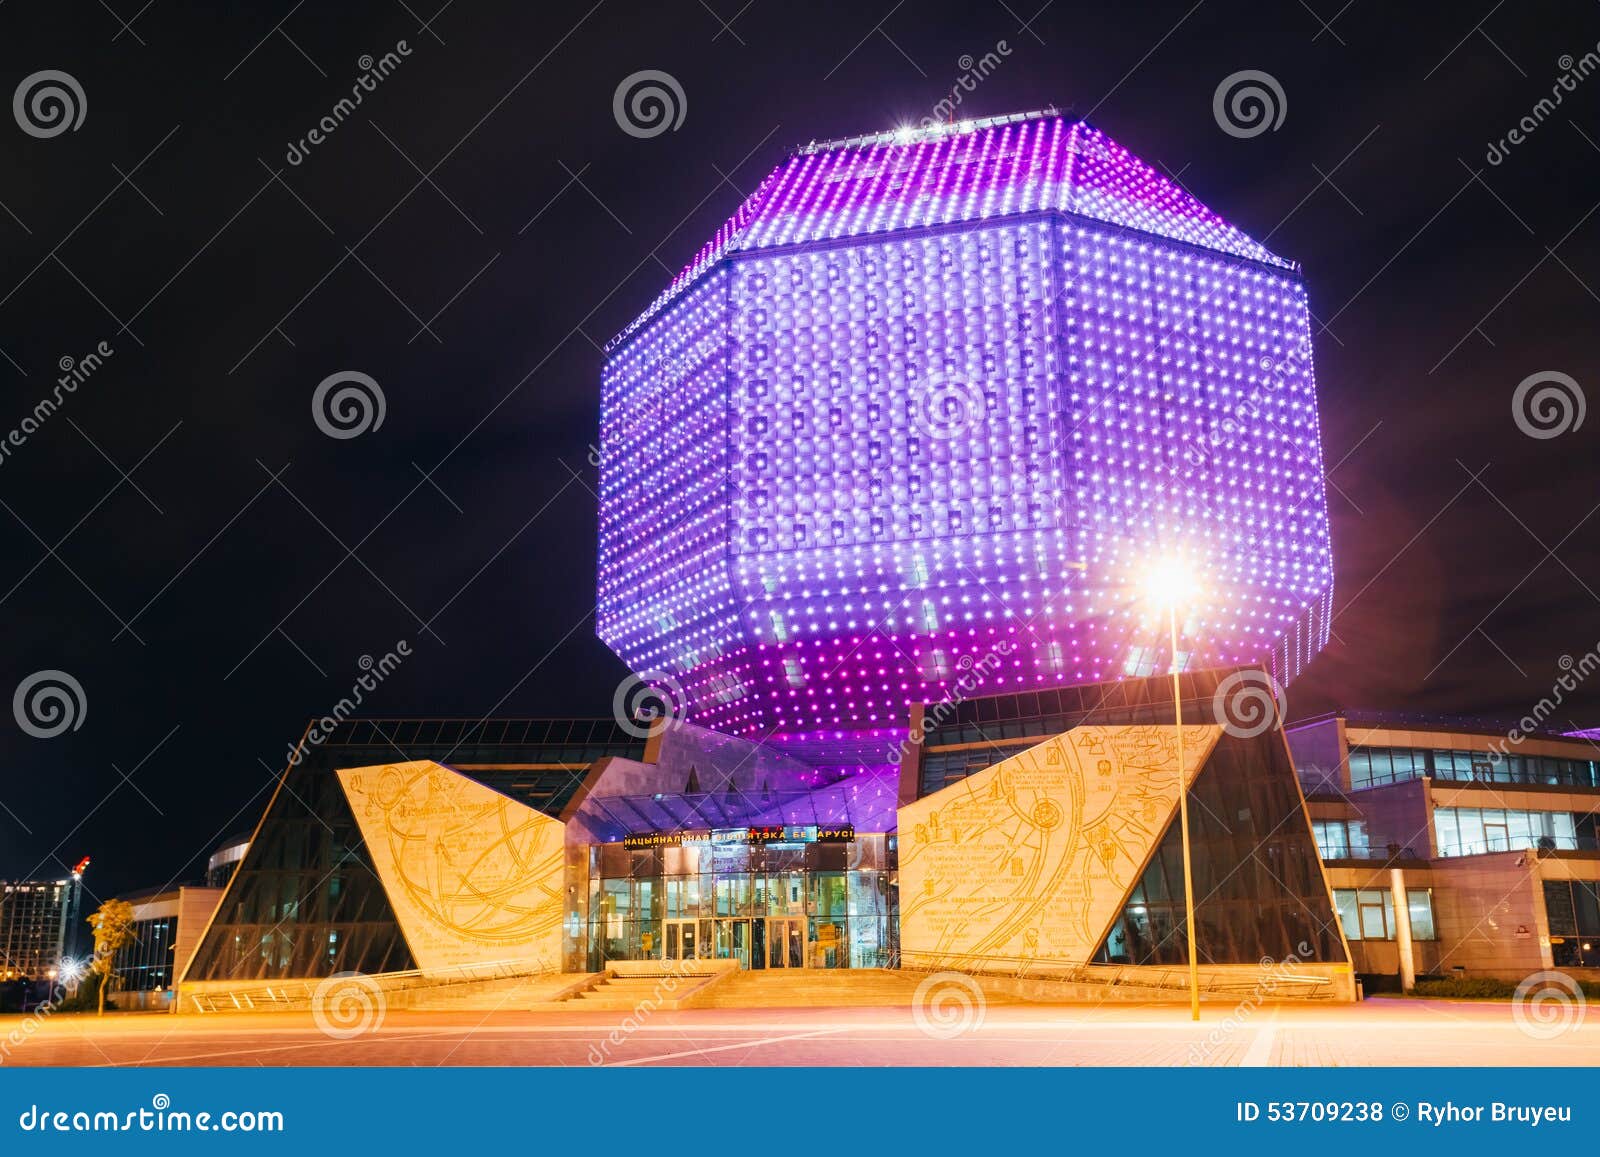 Unik byggnad - nationellt arkiv av Vitryssland. MINSK VITRYSSLAND - SEPTEMBER 28, 2014: Unik byggnad av det nationella arkivet av Vitryssland i Minsk på nattplatsen Byggnad har 23 golv och är 72 meter hög Arkivet kan placera omkring 2.000 avläsare och presenterar en konferenskorridor för 500 plats